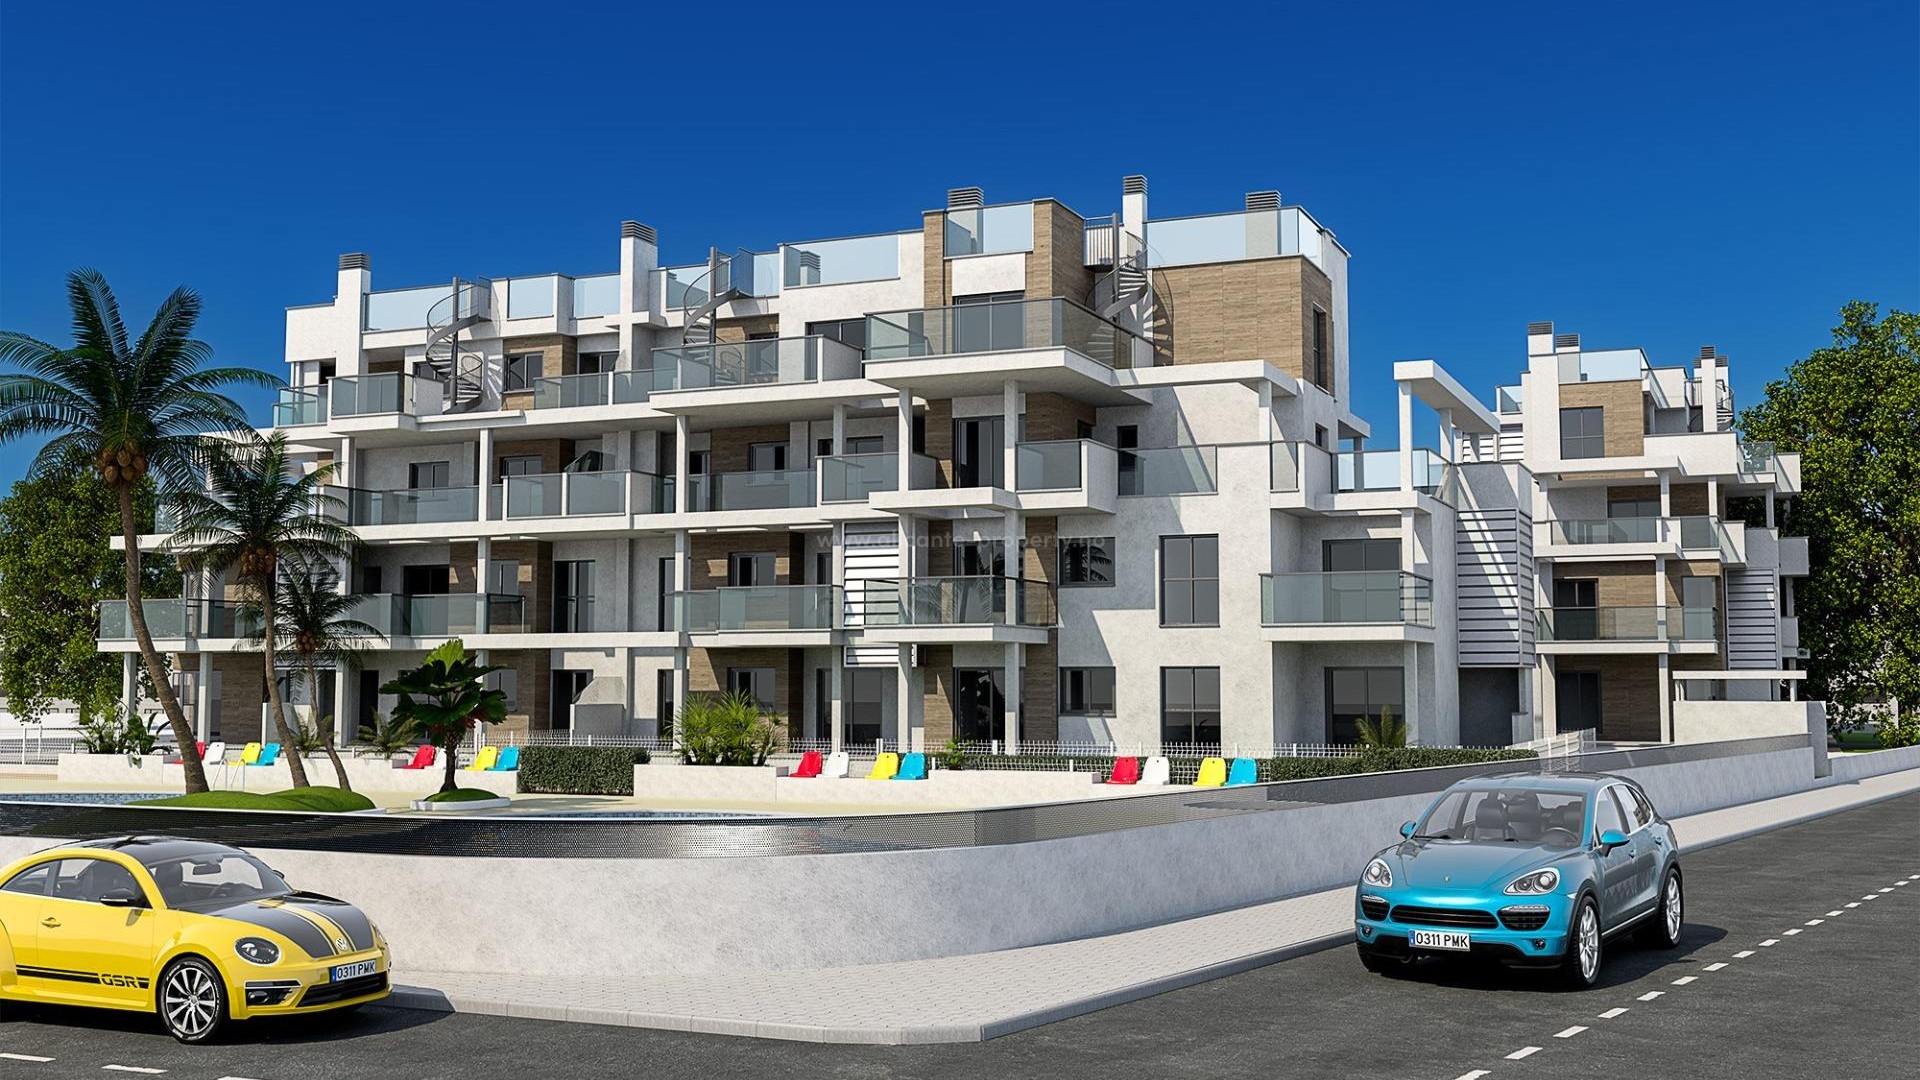 29 nye leiligheter i Denia, 2/3 soverom, 2 bad, felles basseng, hage eller solarium,parkering,uslåelig beliggenhet 100 meter fra strande, 2 km til sentrum